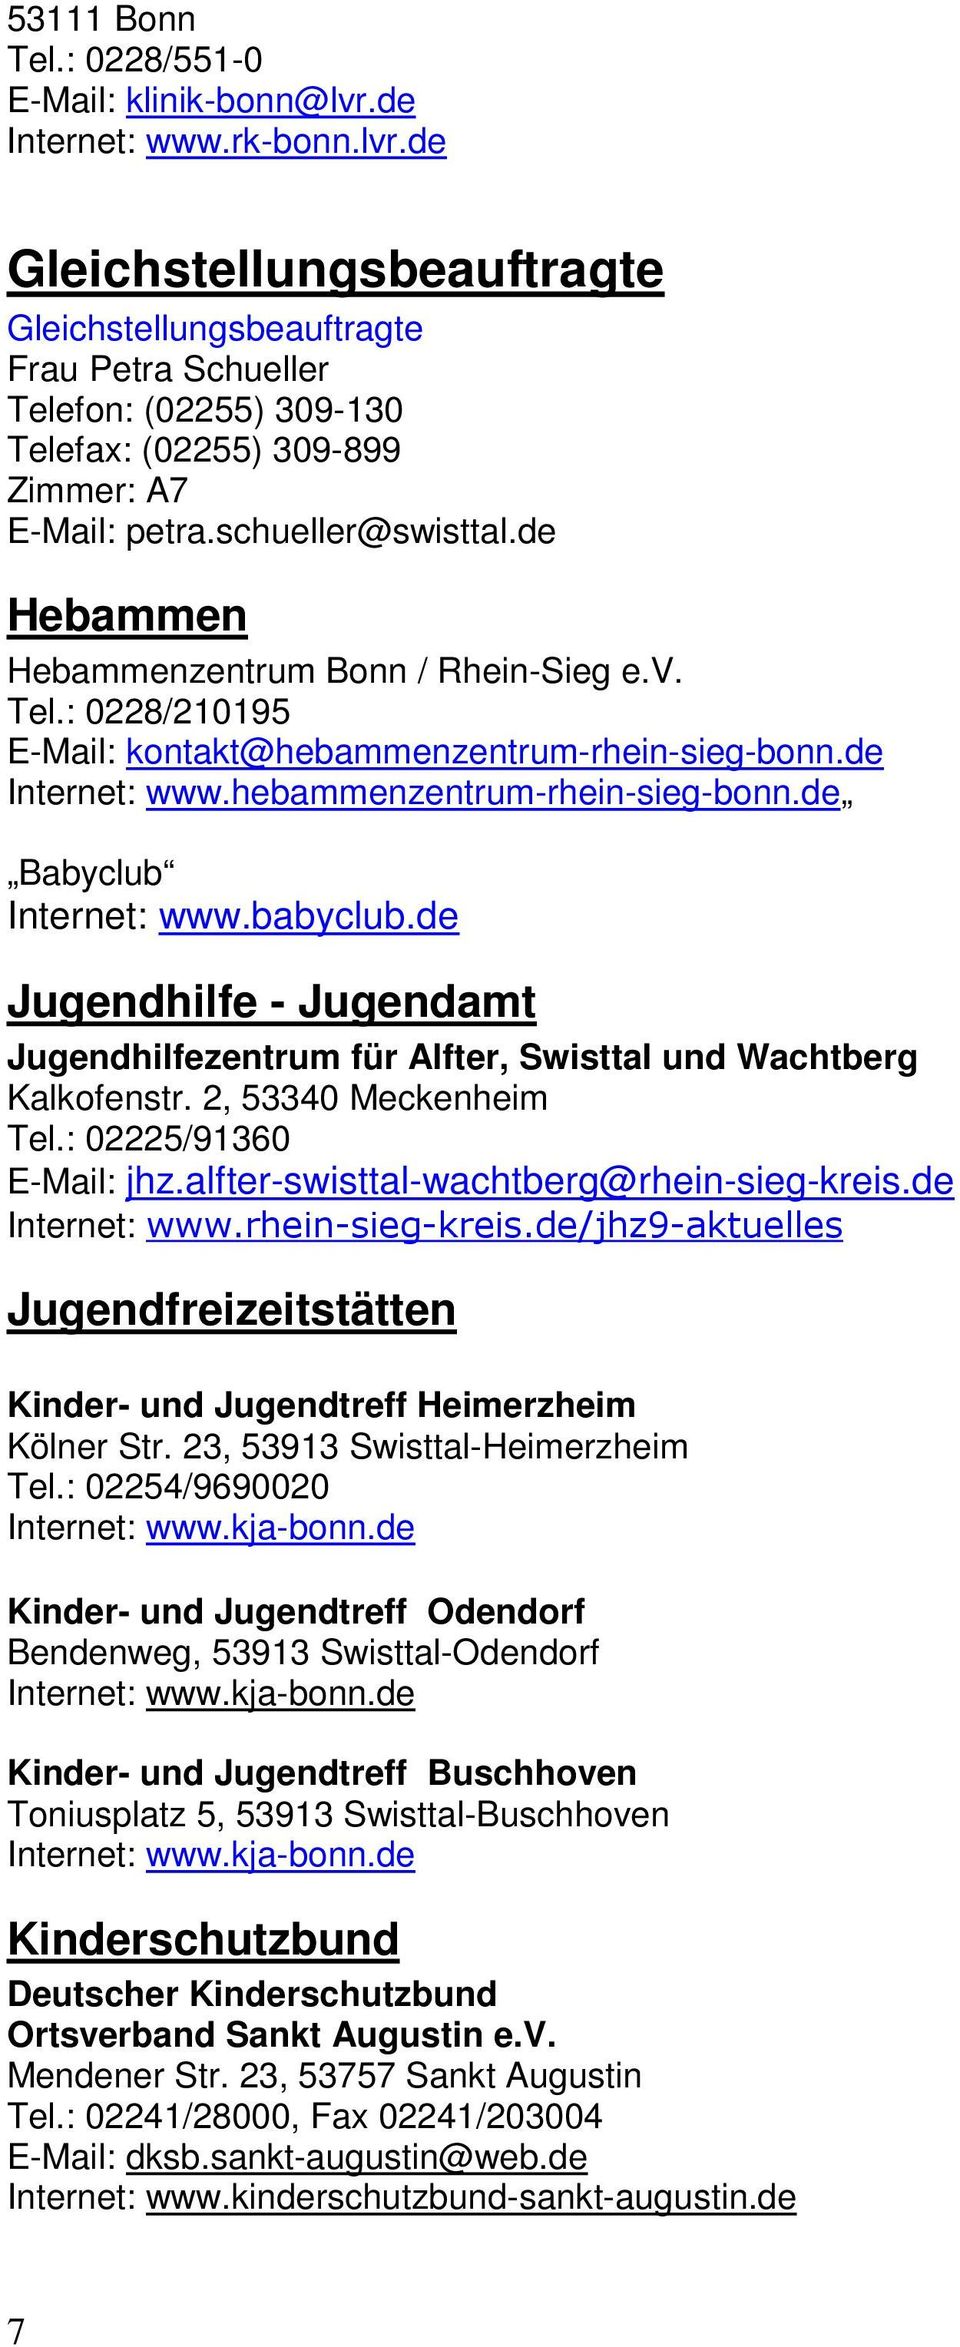 schueller@swisttal.de Hebammen Hebammenzentrum Bonn / Rhein-Sieg e.v. Tel.: 0228/210195 E-Mail: kontakt@hebammenzentrum-rhein-sieg-bonn.de Internet: www.hebammenzentrum-rhein-sieg-bonn.de Babyclub Internet: www.